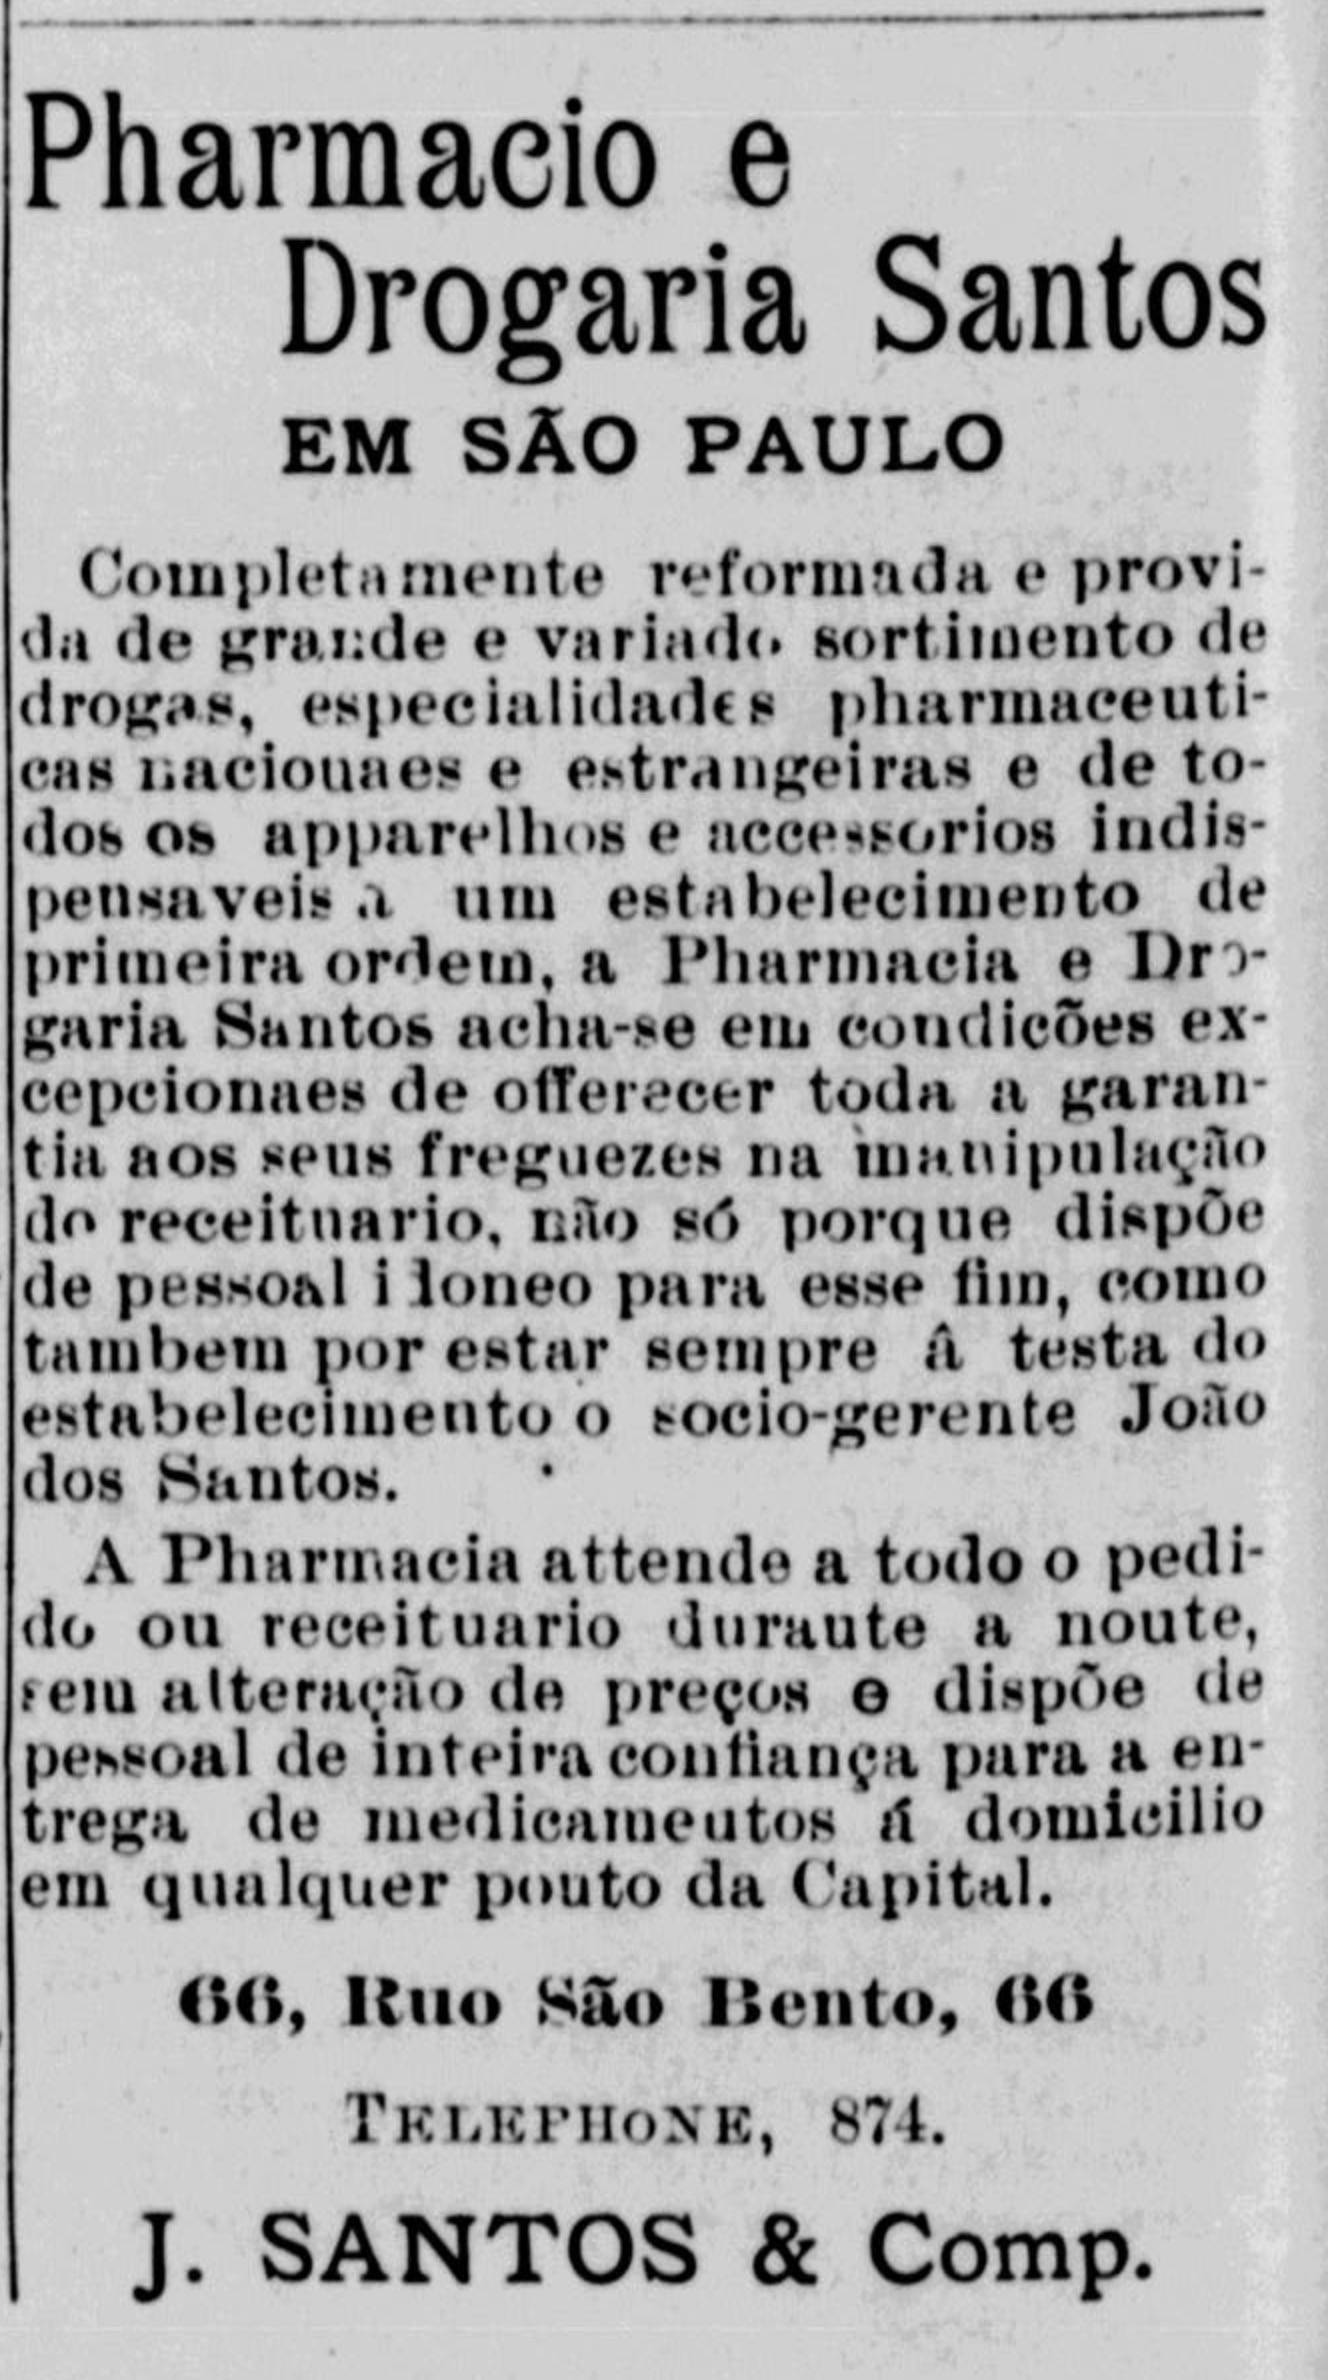 Campanha veiculada em 1899 apresentando os serviços da farmácia e drogaria Santos